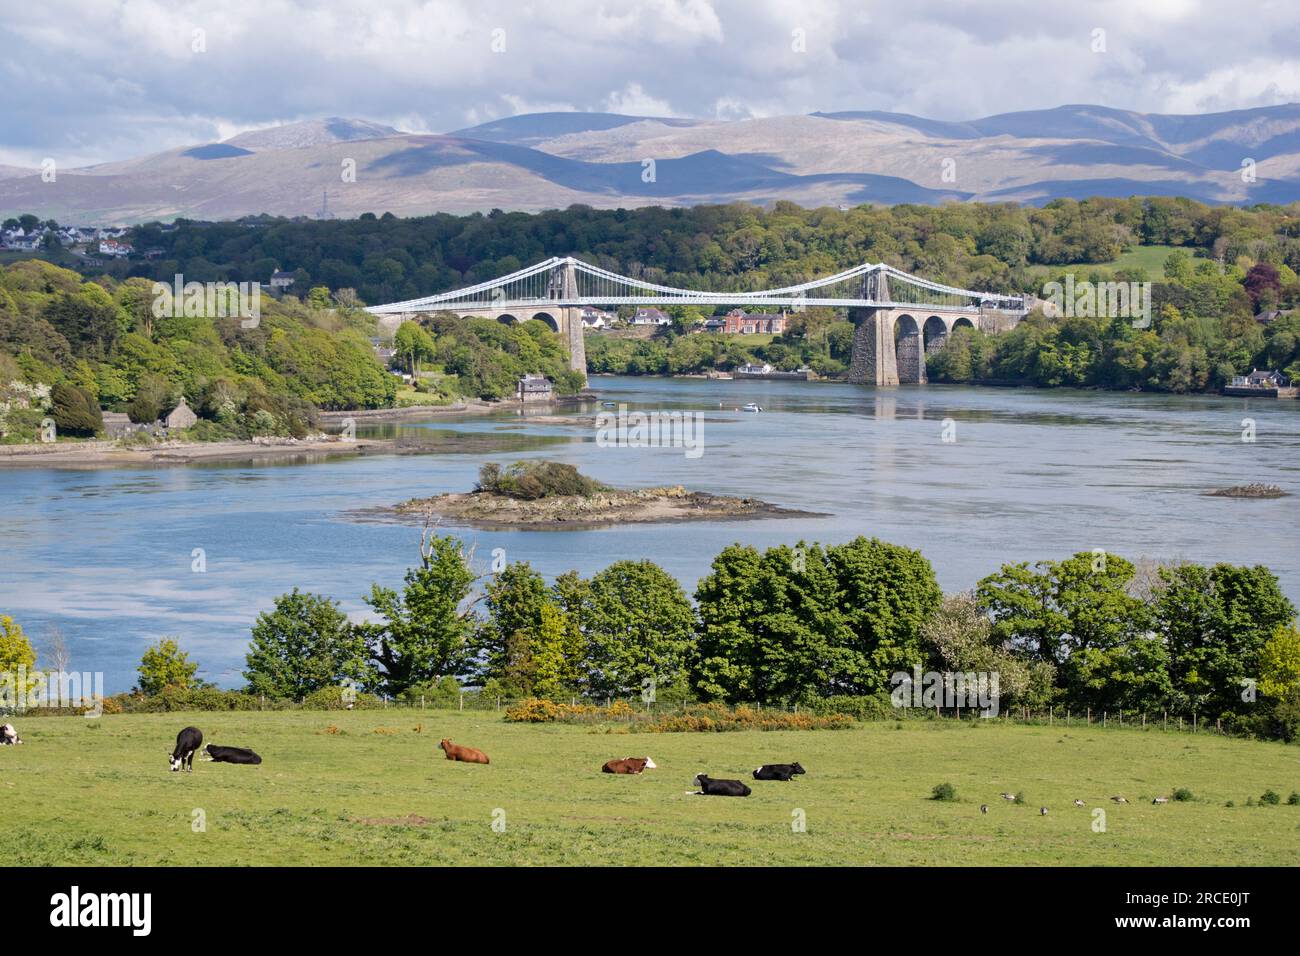 Pont suspendu de Menai traversant le détroit de Menai depuis l'île d'Anglesey et le continent du pays de Galles. nord-ouest du pays de Galles. ROYAUME-UNI Banque D'Images